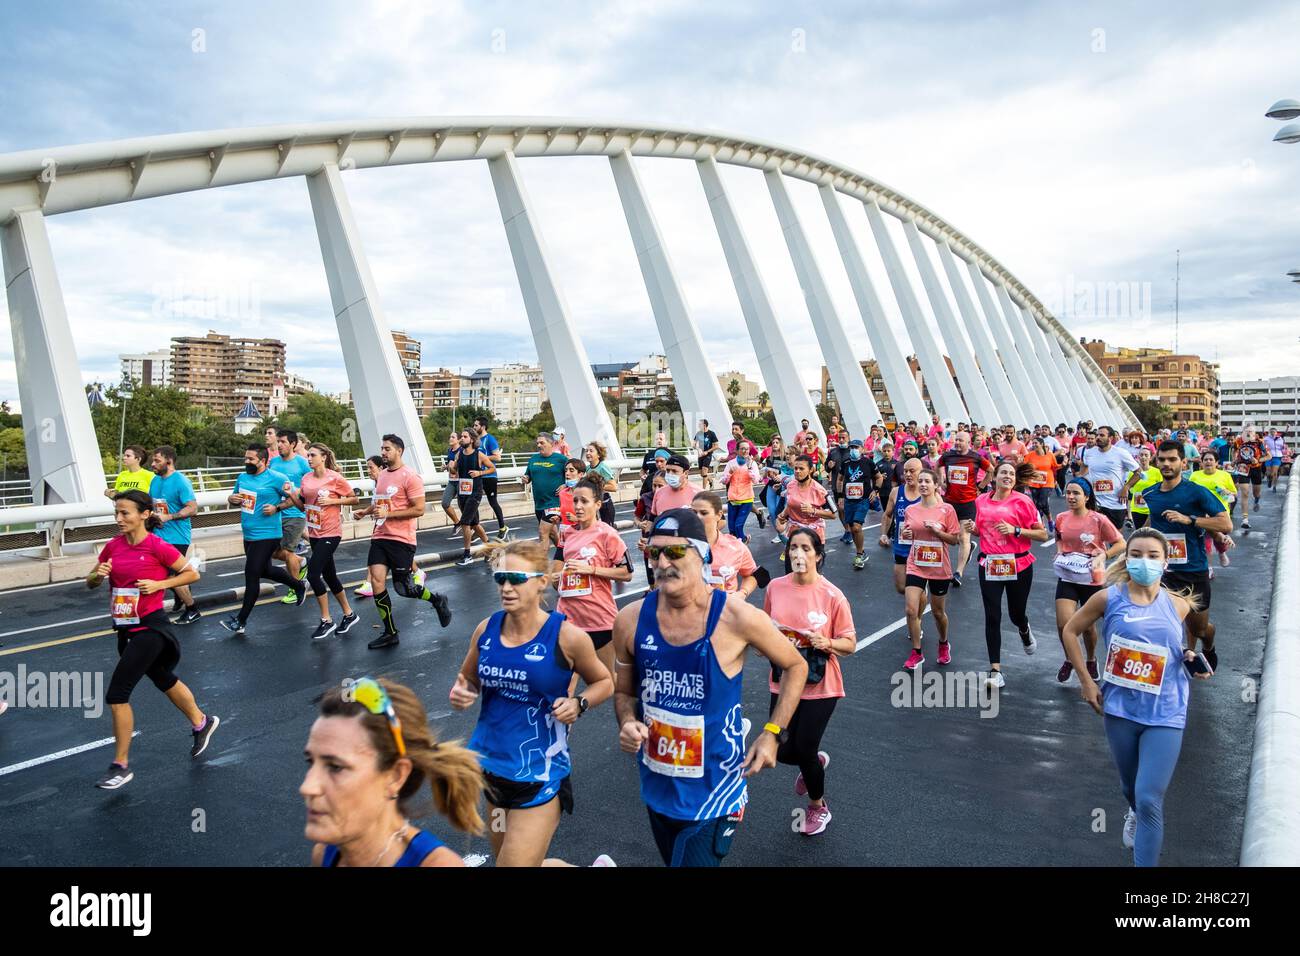 Valencia, Spagna; 31th ottobre 2021: Atleti partecipanti che corrono in una gara popolare Foto Stock